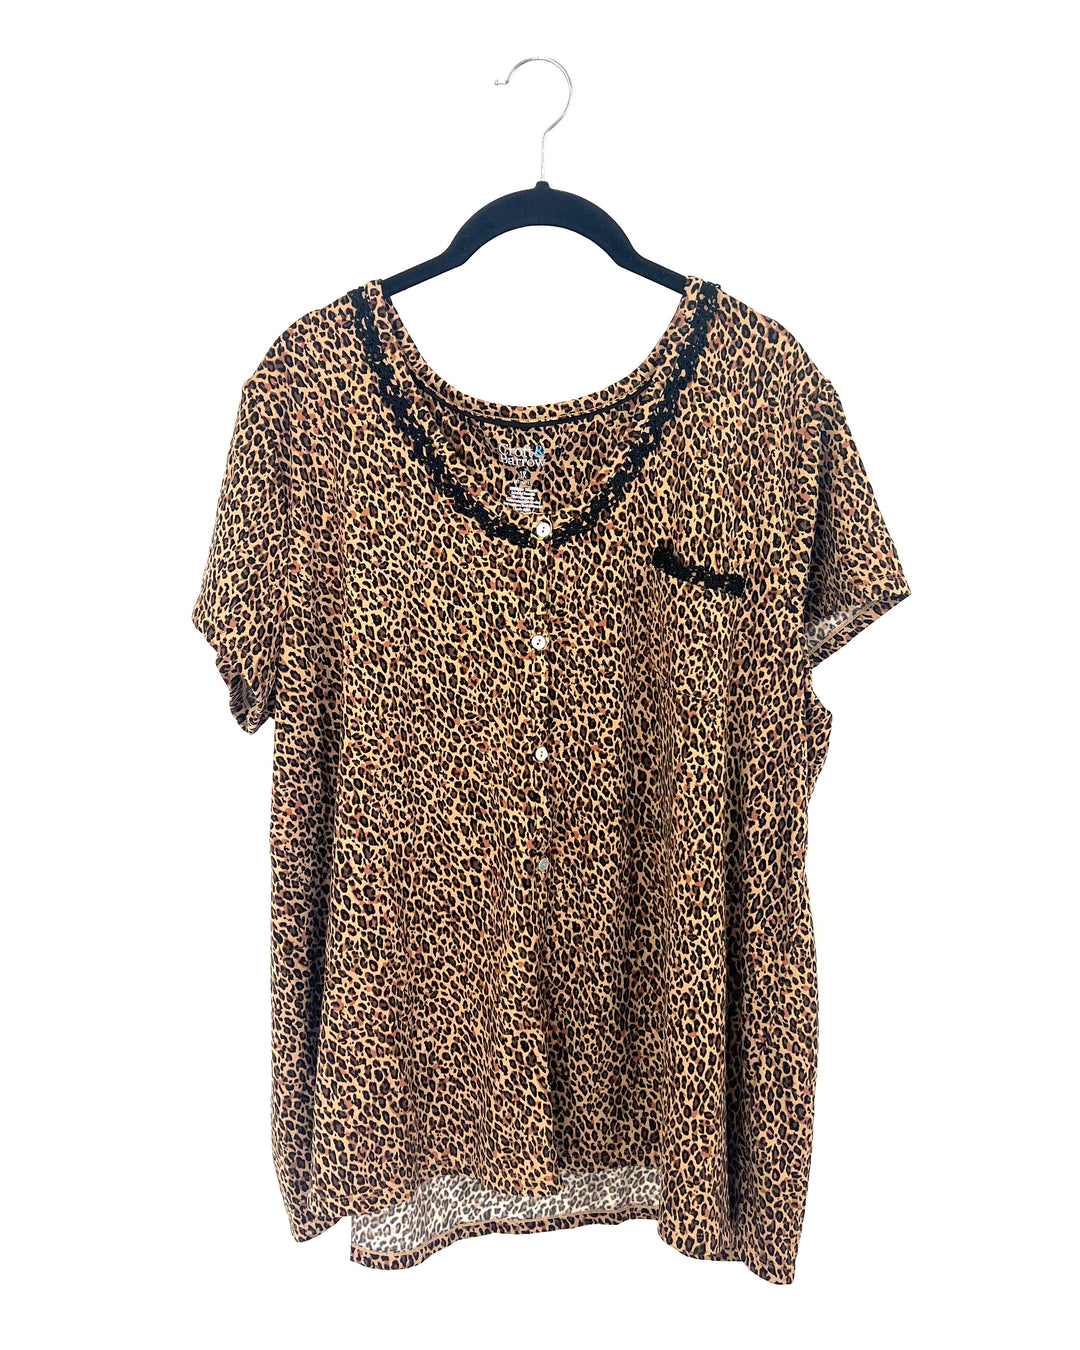 Short Sleeve Cheetah Print Pajama Set - 1X